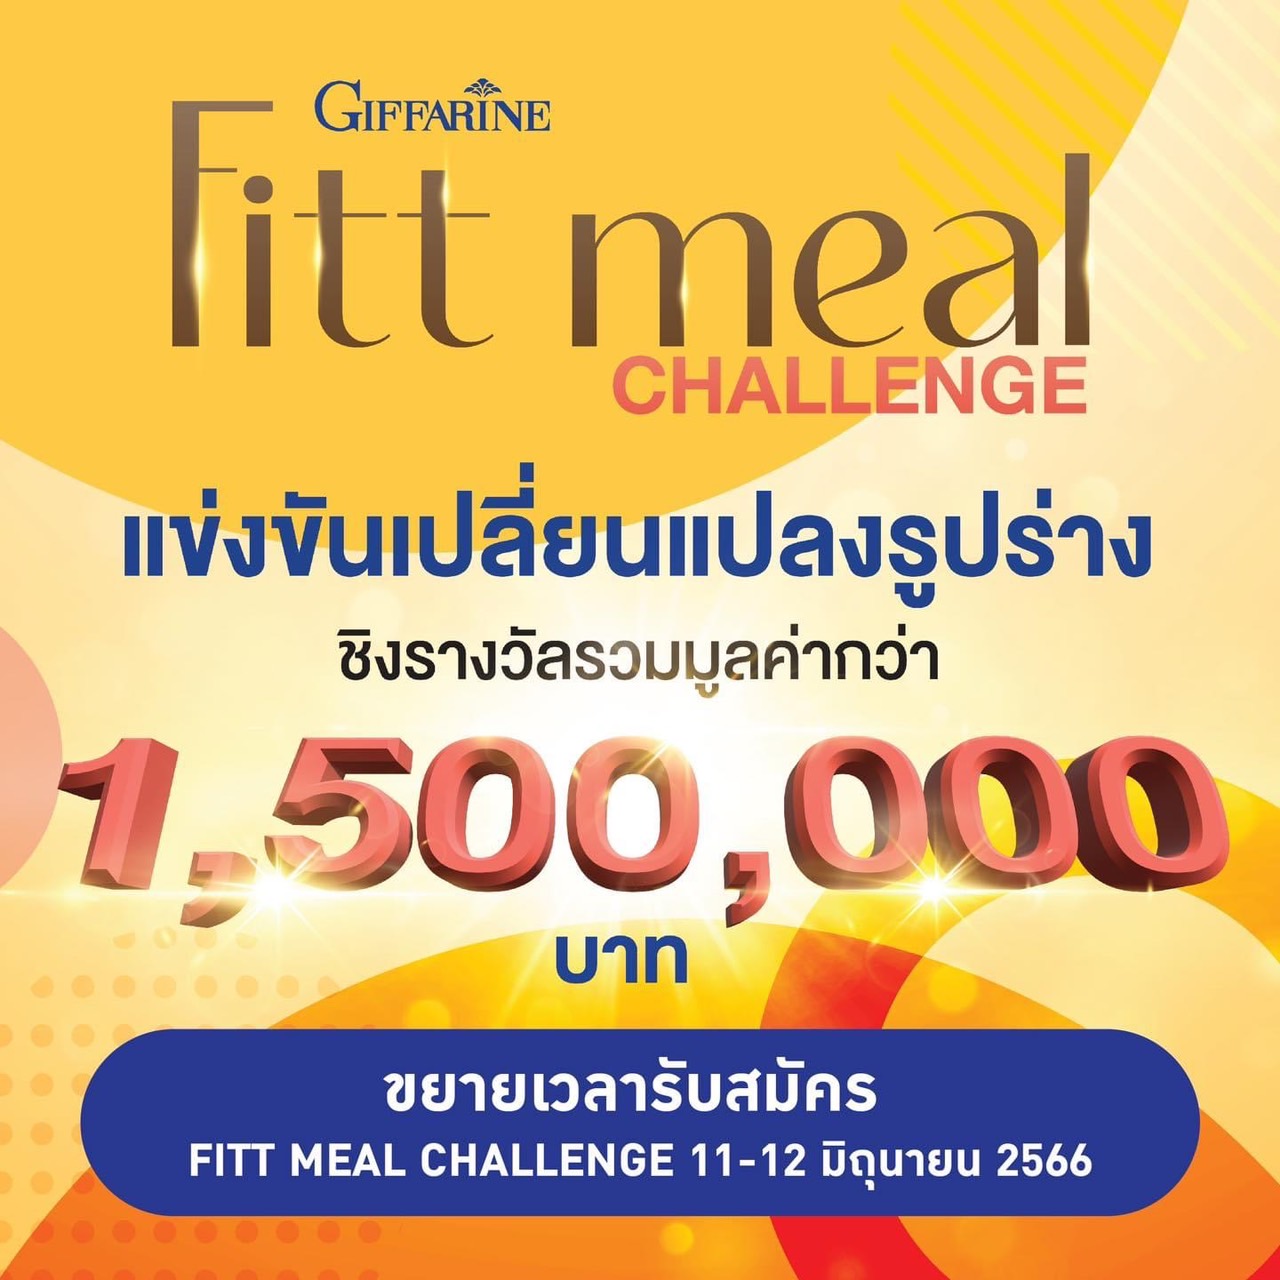 กิจกรรมการแข่งขันแห่งปี!!  Fitt meal challenge ชิงรางวัลรวมมูลค่ากว่า 1,500,000 บาท!!